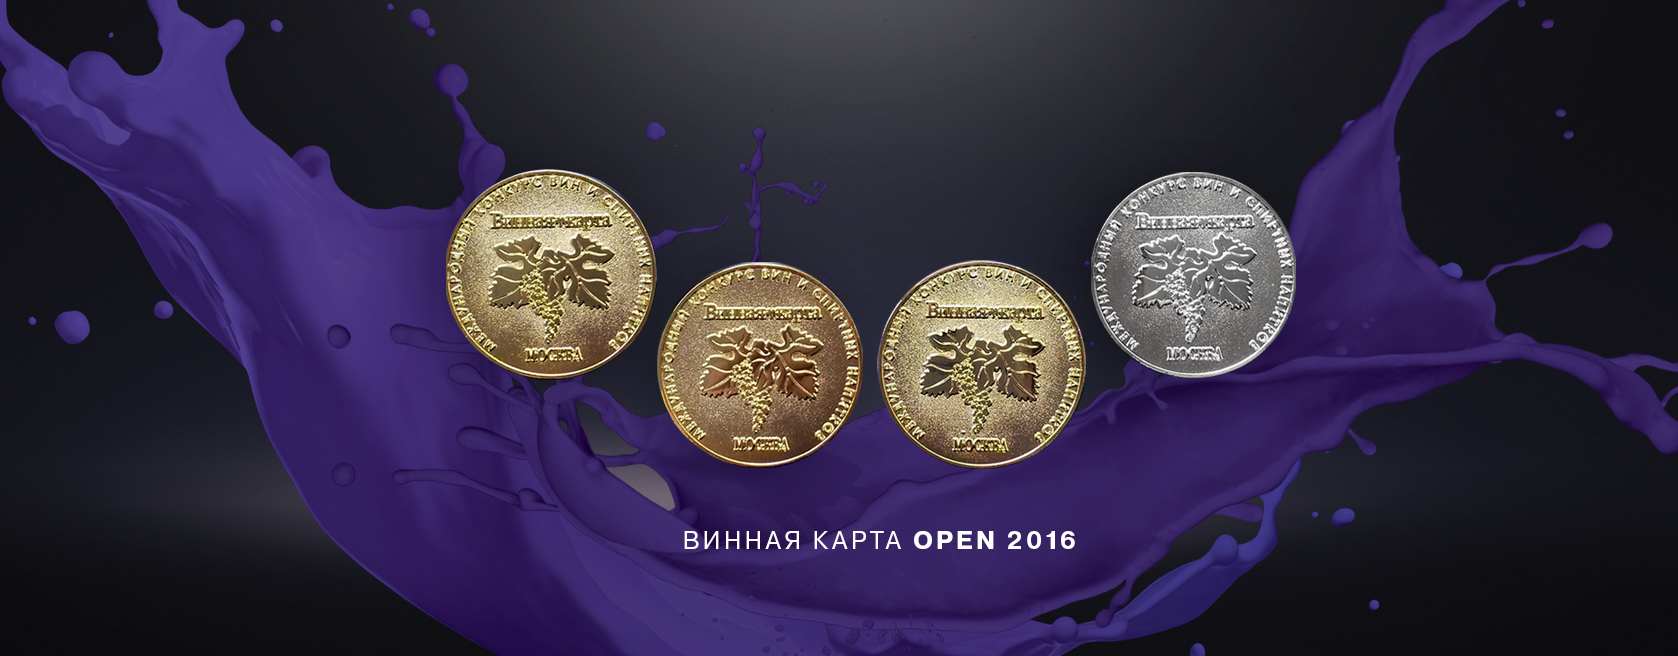 Вина Midsummer Юрия Грымова получили 4 медали